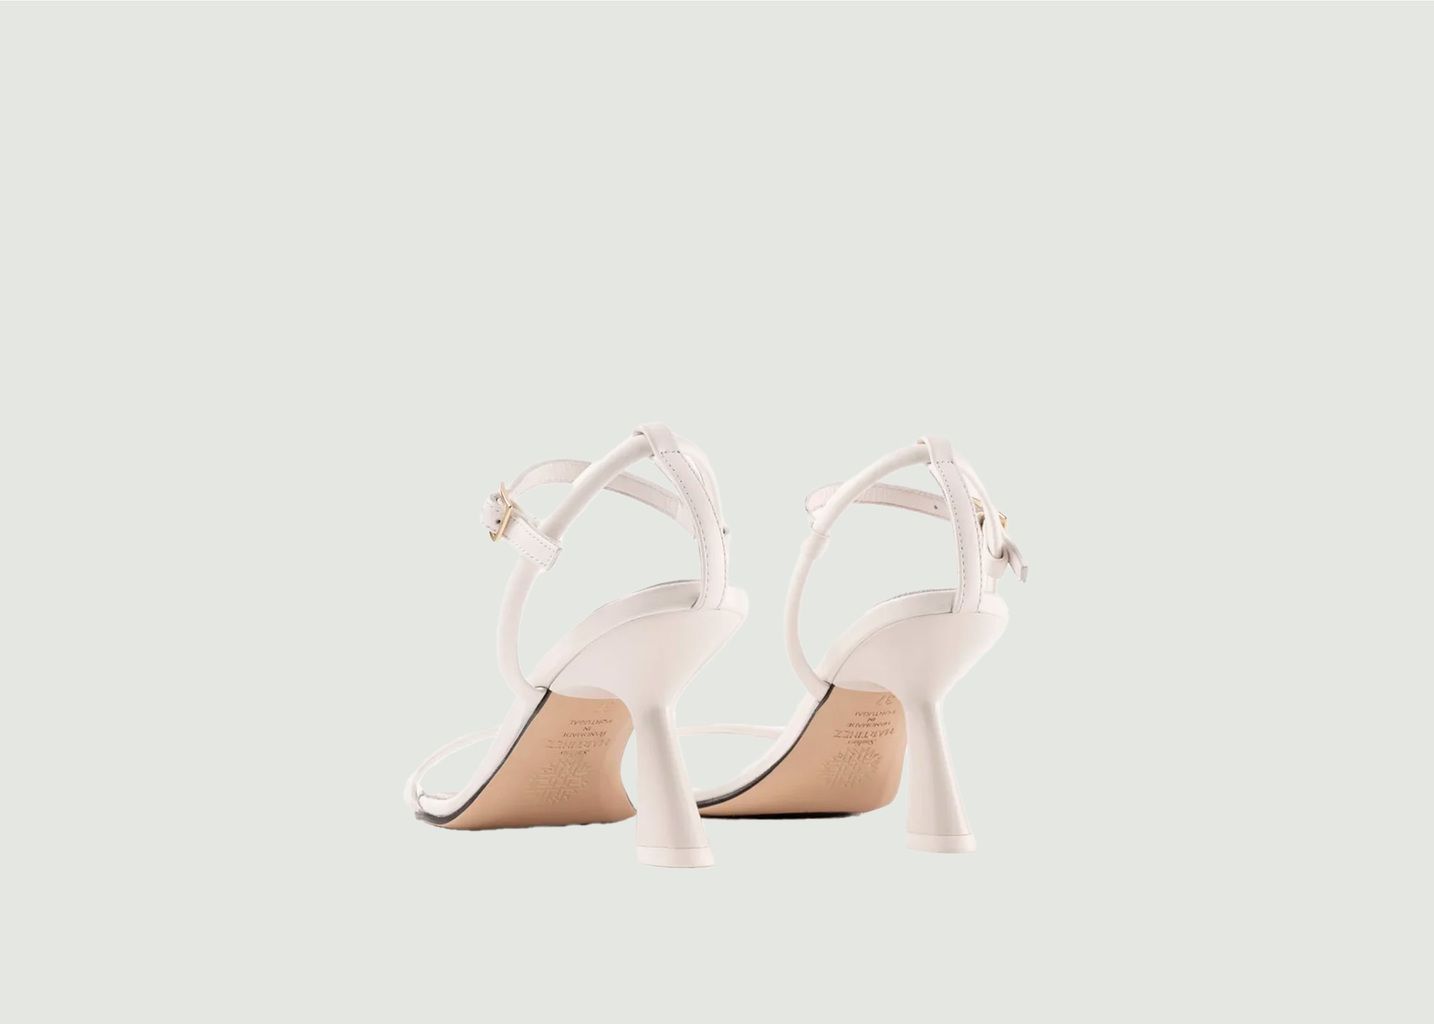 Carolina leather heeled sandals - Souliers Martinez